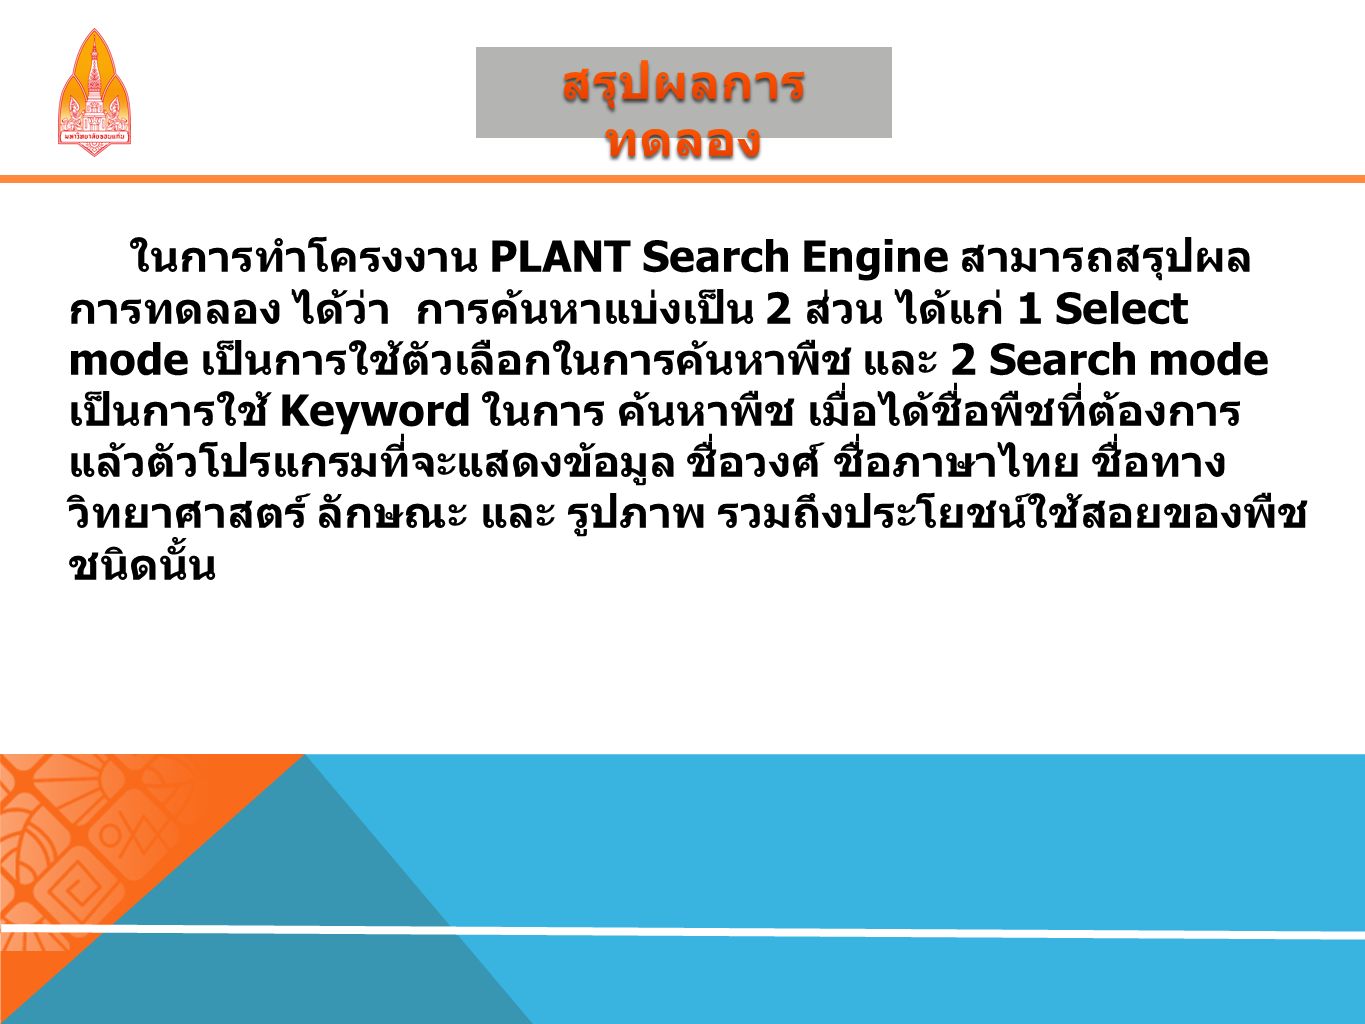 ในการทำโครงงาน PLANT Search Engine สามารถสรุปผล การทดลอง ได้ว่า การค้นหาแบ่งเป็น 2 ส่วน ได้แก่ 1 Select mode เป็นการใช้ตัวเลือกในการค้นหาพืช และ 2 Search mode เป็นการใช้ Keyword ในการ ค้นหาพืช เมื่อได้ชื่อพืชที่ต้องการ แล้วตัวโปรแกรมที่จะแสดงข้อมูล ชื่อวงศ์ ชื่อภาษาไทย ชื่อทาง วิทยาศาสตร์ ลักษณะ และ รูปภาพ รวมถึงประโยชน์ใช้สอยของพืช ชนิดนั้น